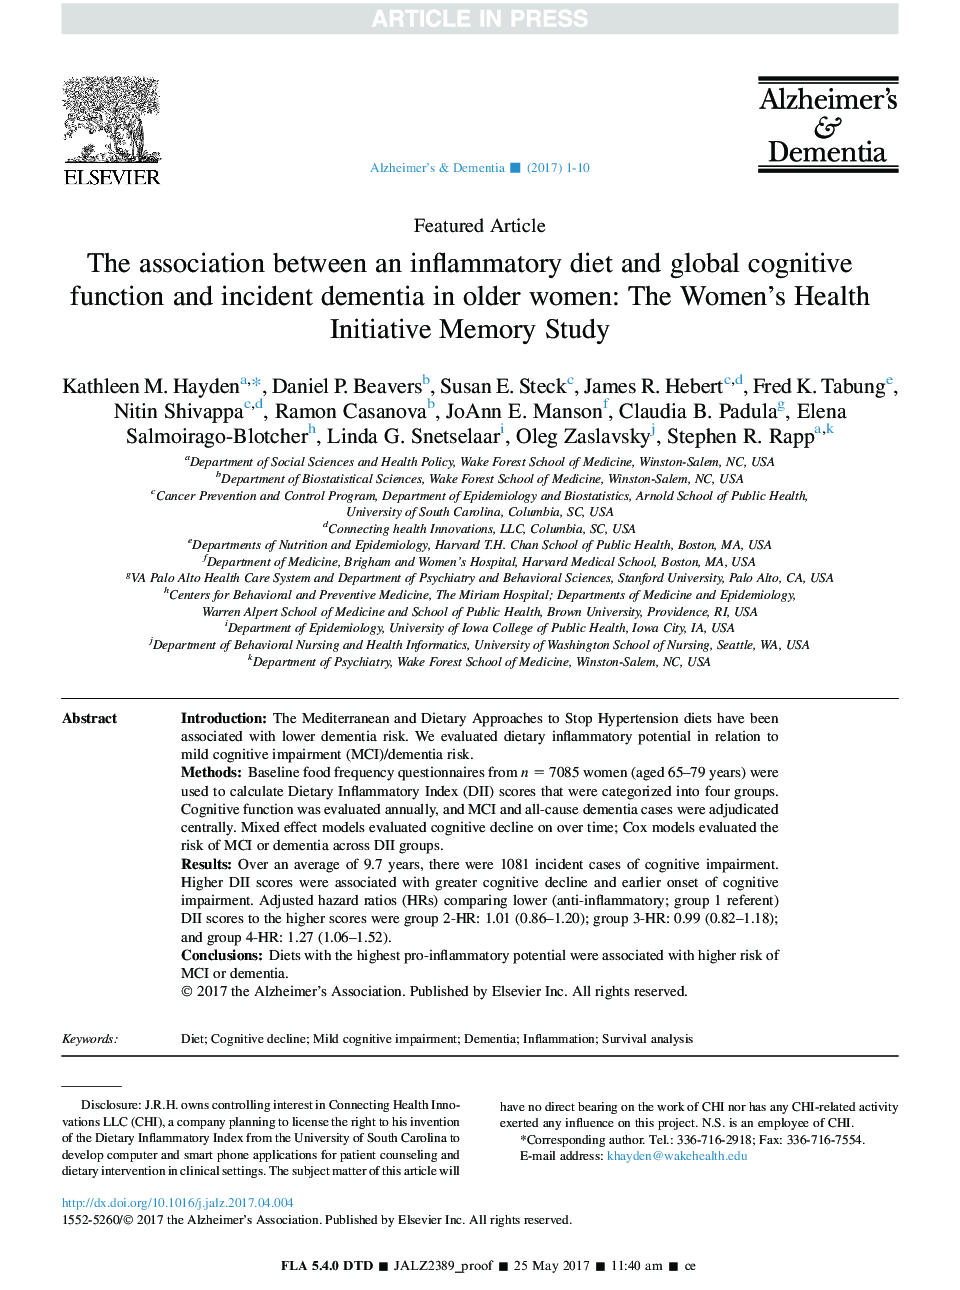 ارتباط بین رژیم التهابی و عملکرد شناختی جهانی و زوال عقل در زنان مسن تر: مطالعه حافظه ابتکار بهداشت زنان 